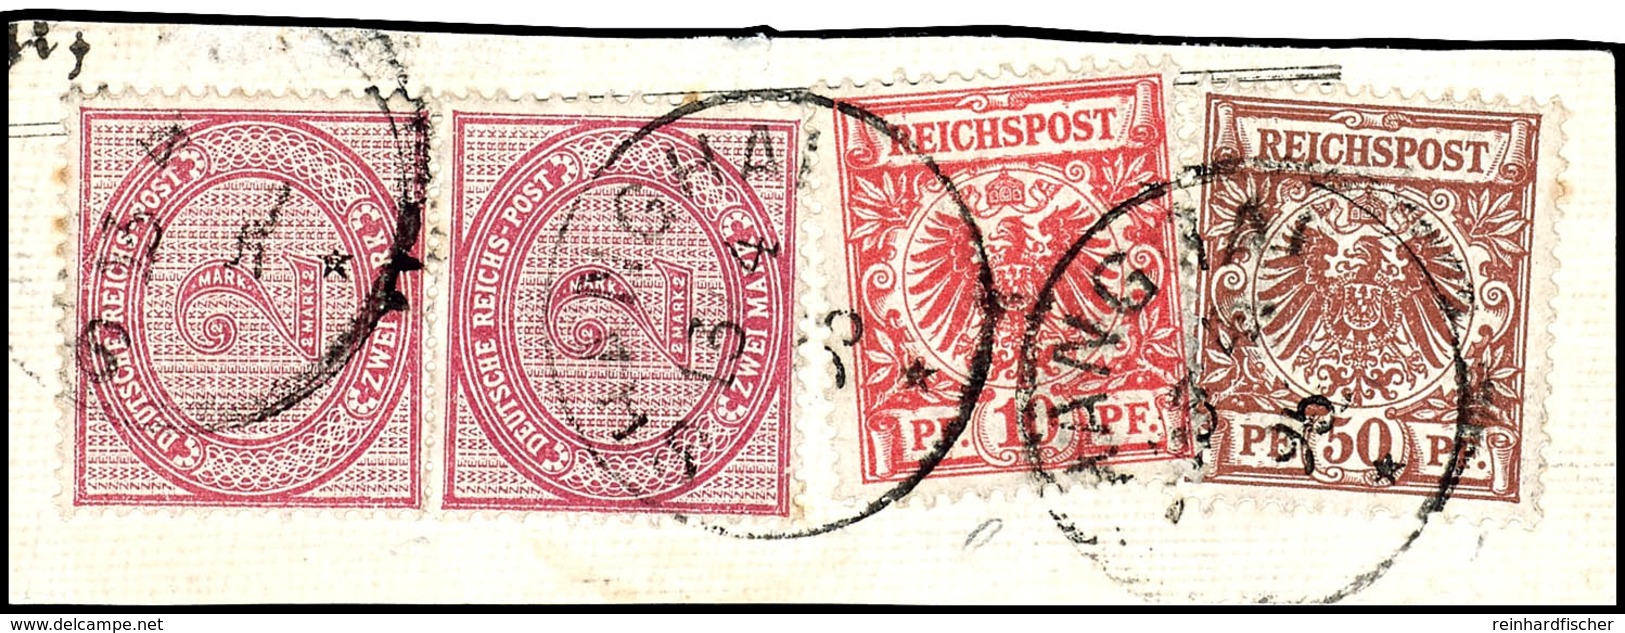 10 Pfennig, 50 Pfennig, 2 Mark 2 Werte, Kabinettbriefstück, Michel 400,-, Katalog: V47cV50c,V37 BS - Deutsche Post In China